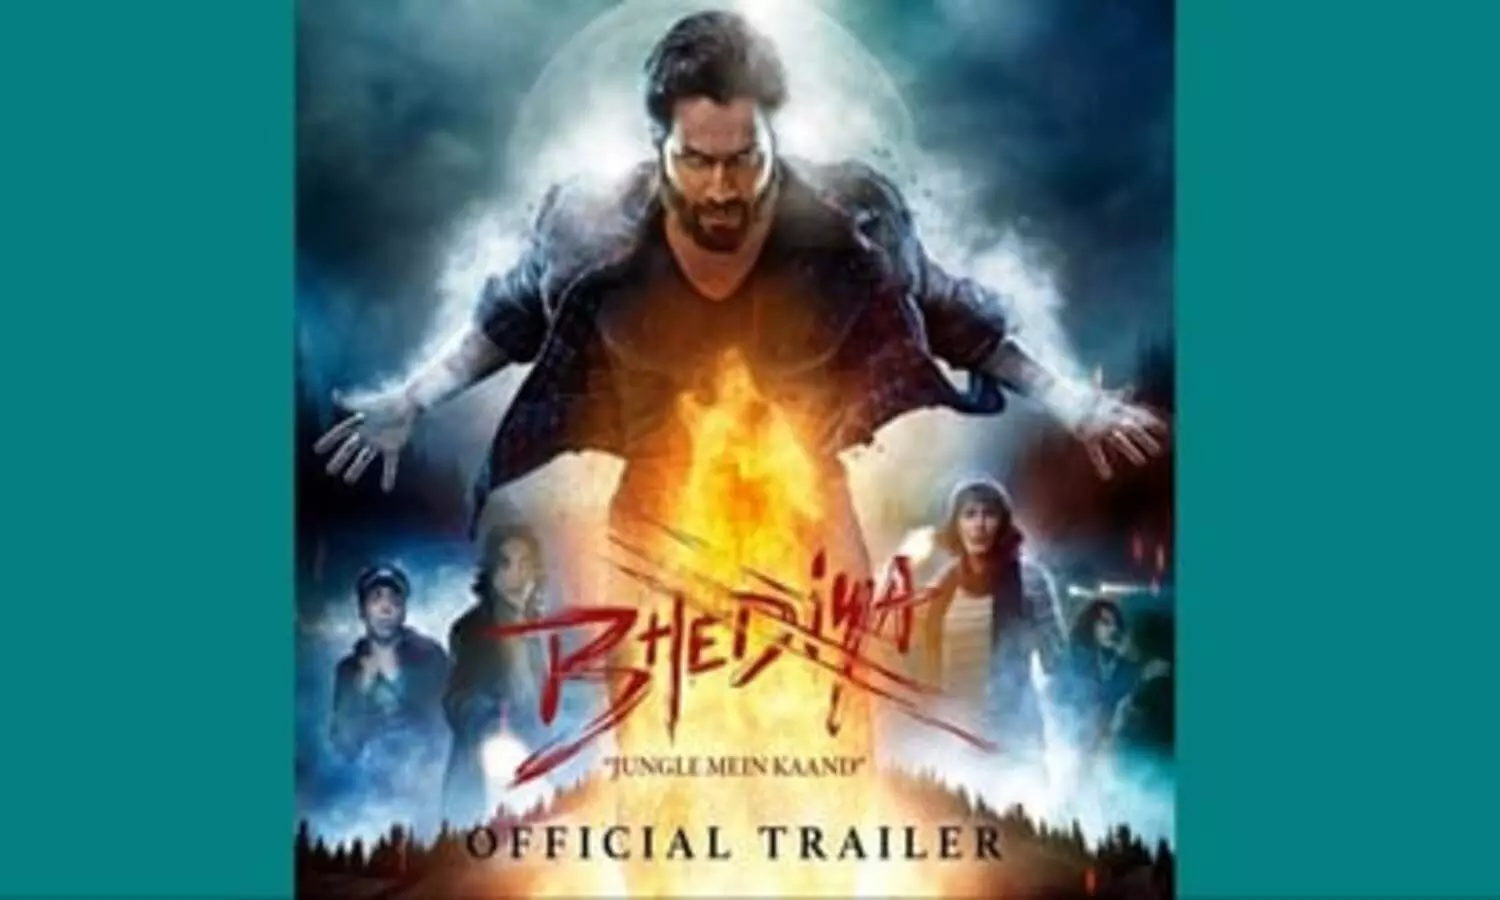 Bhediya Movie Review: फिल्म रूही के नक्शे कदम पर जा रही है वरुण धवन की फिल्म भेड़िया